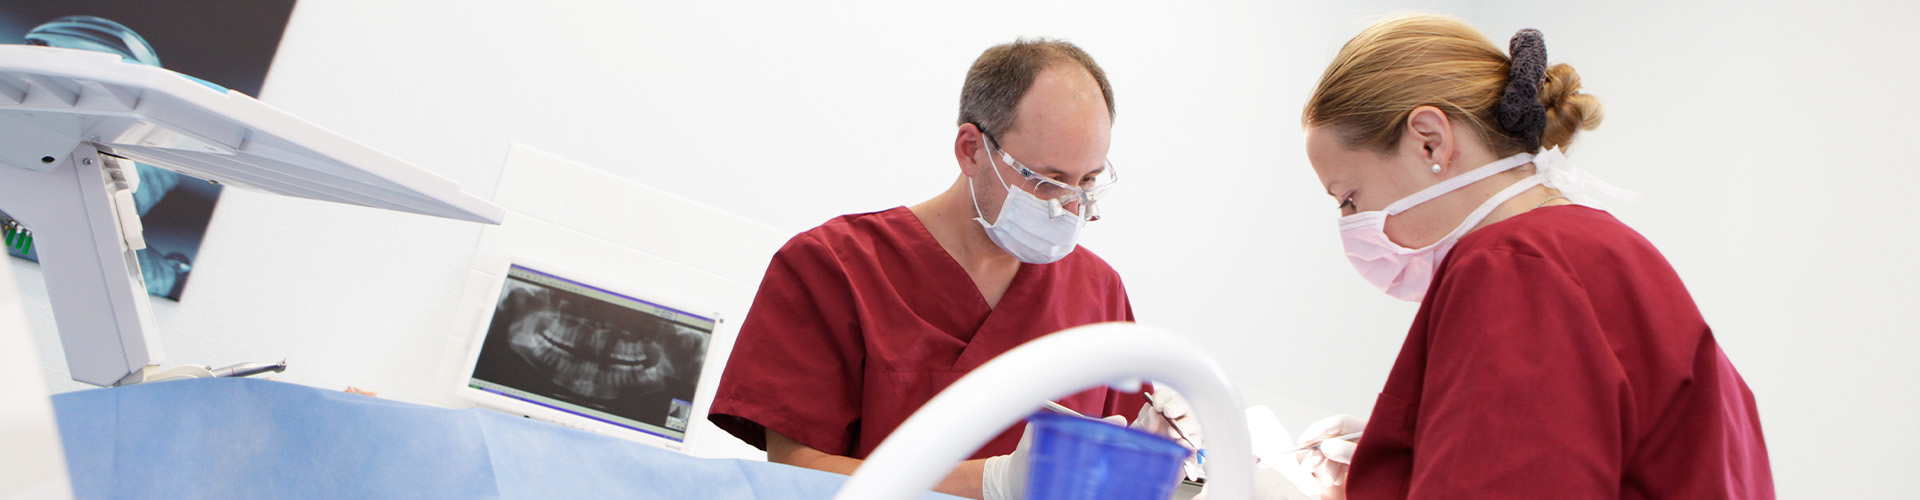 Zahnersatz in Uelzen: Kronen, Brücken, Prothesen, Implantate